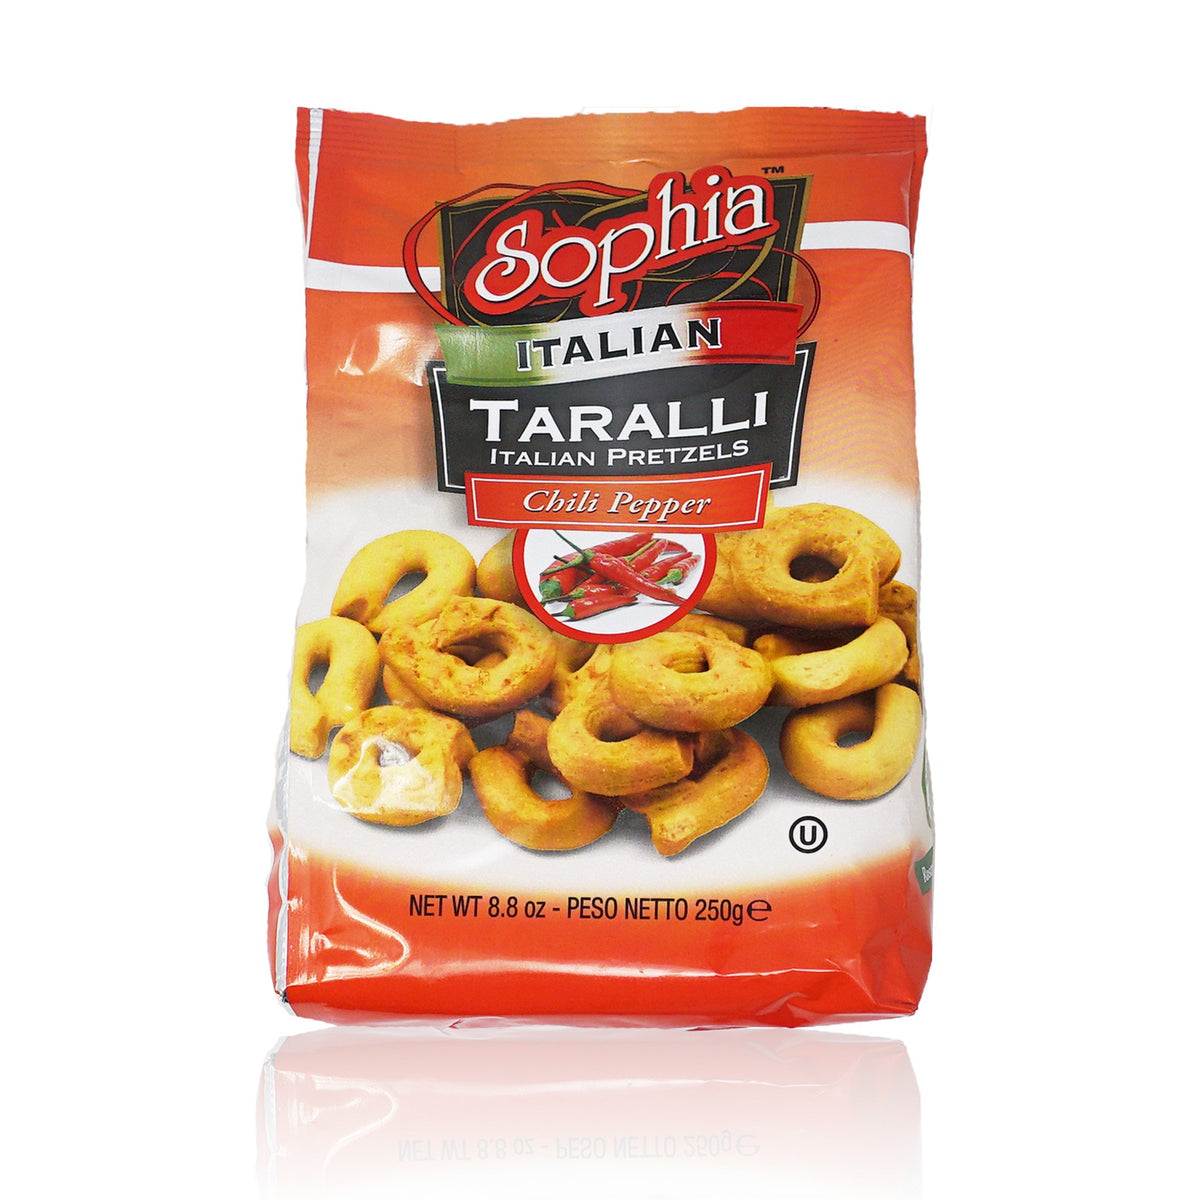 Sophia Taralli Italian Pretzels - Chili Pepper 8.8oz